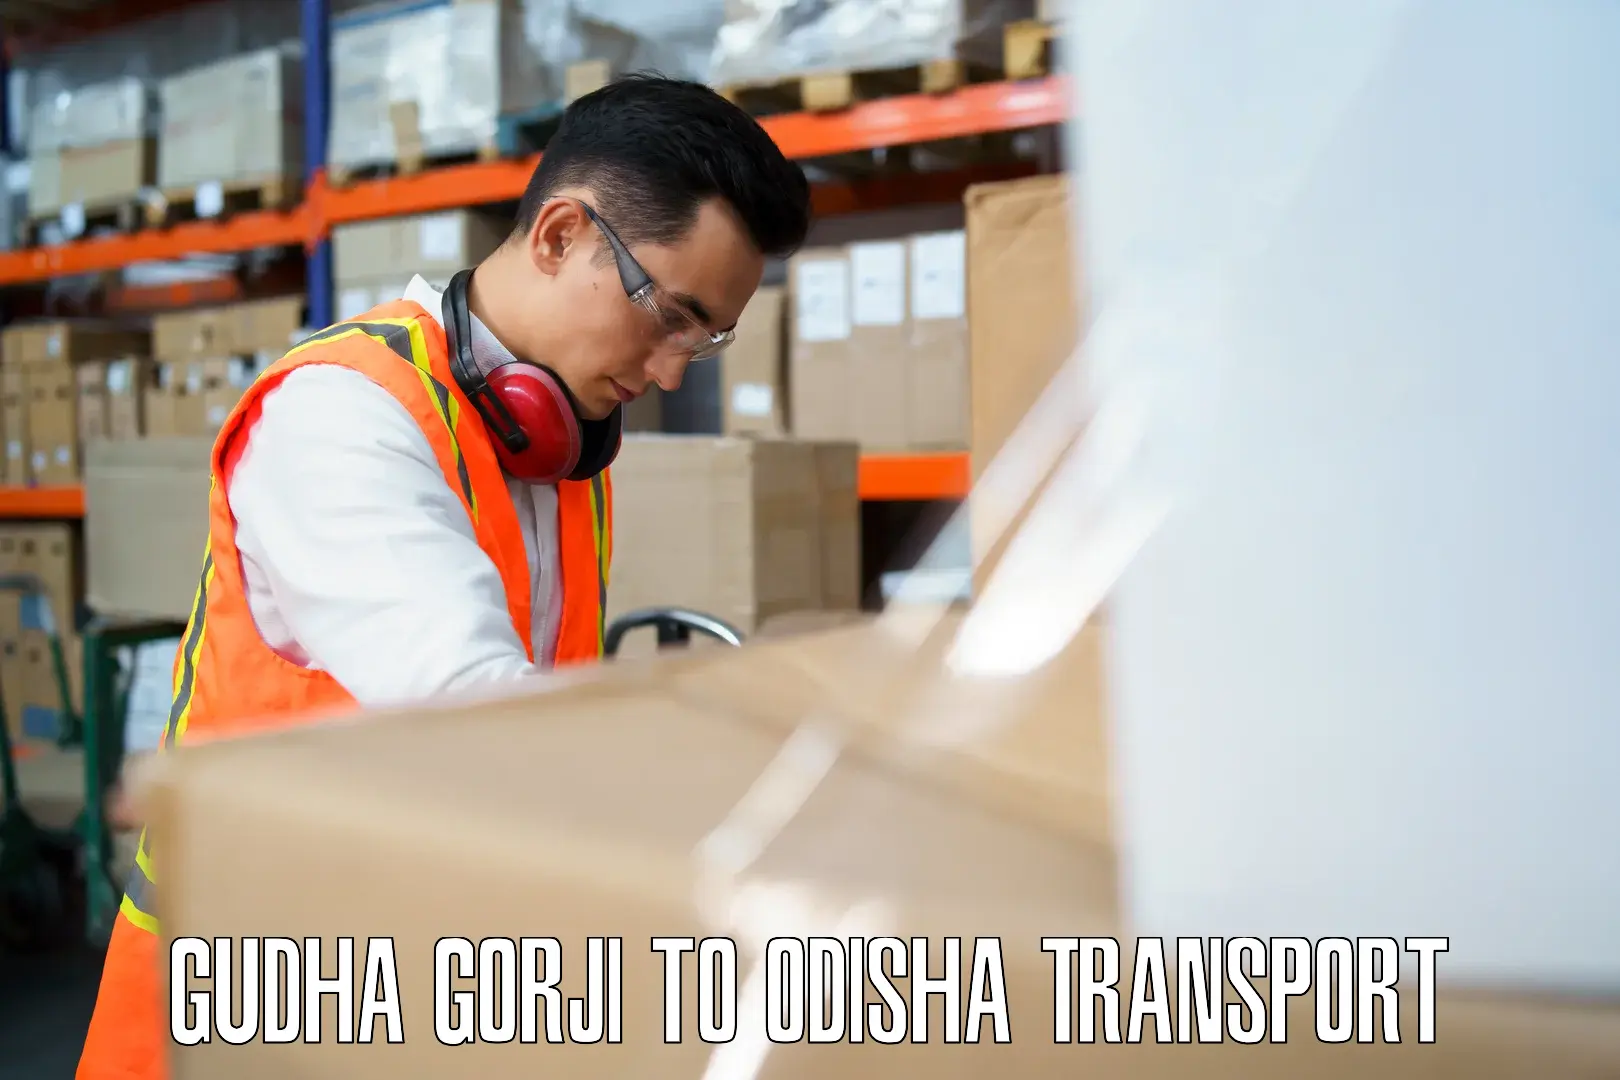 Furniture transport service in Gudha Gorji to Baleswar